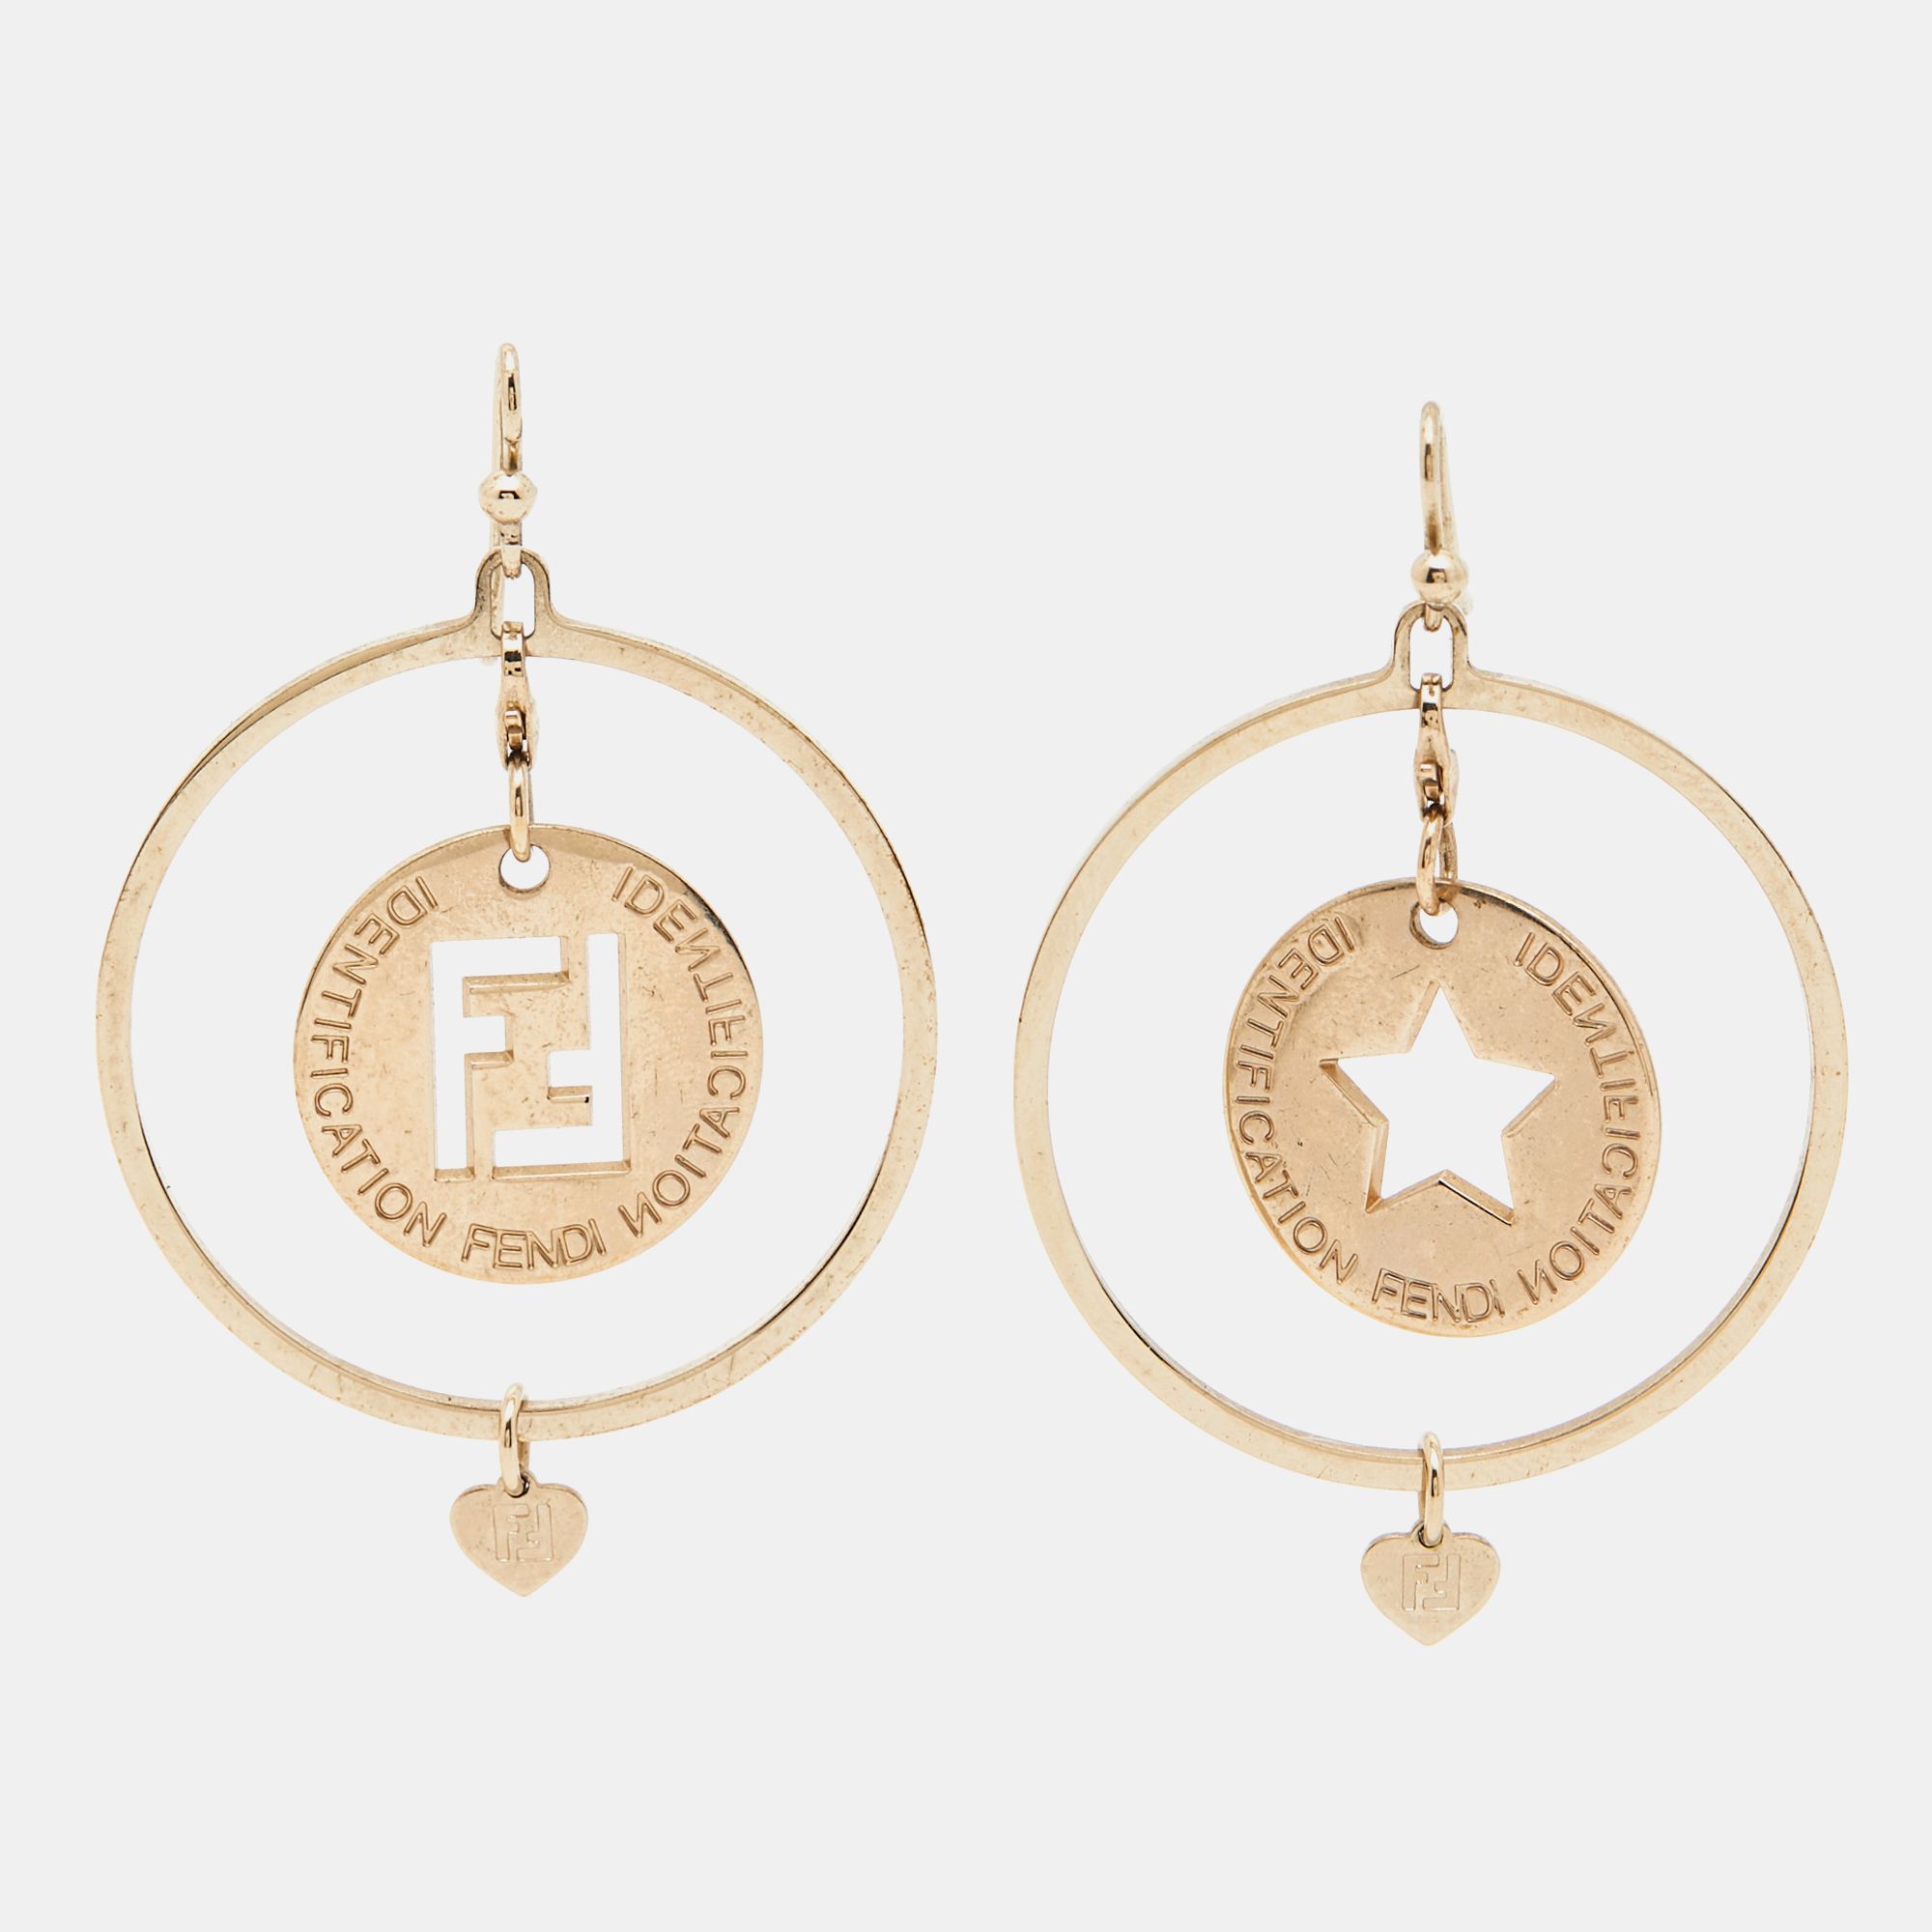 Fendi identification gold tone earrings